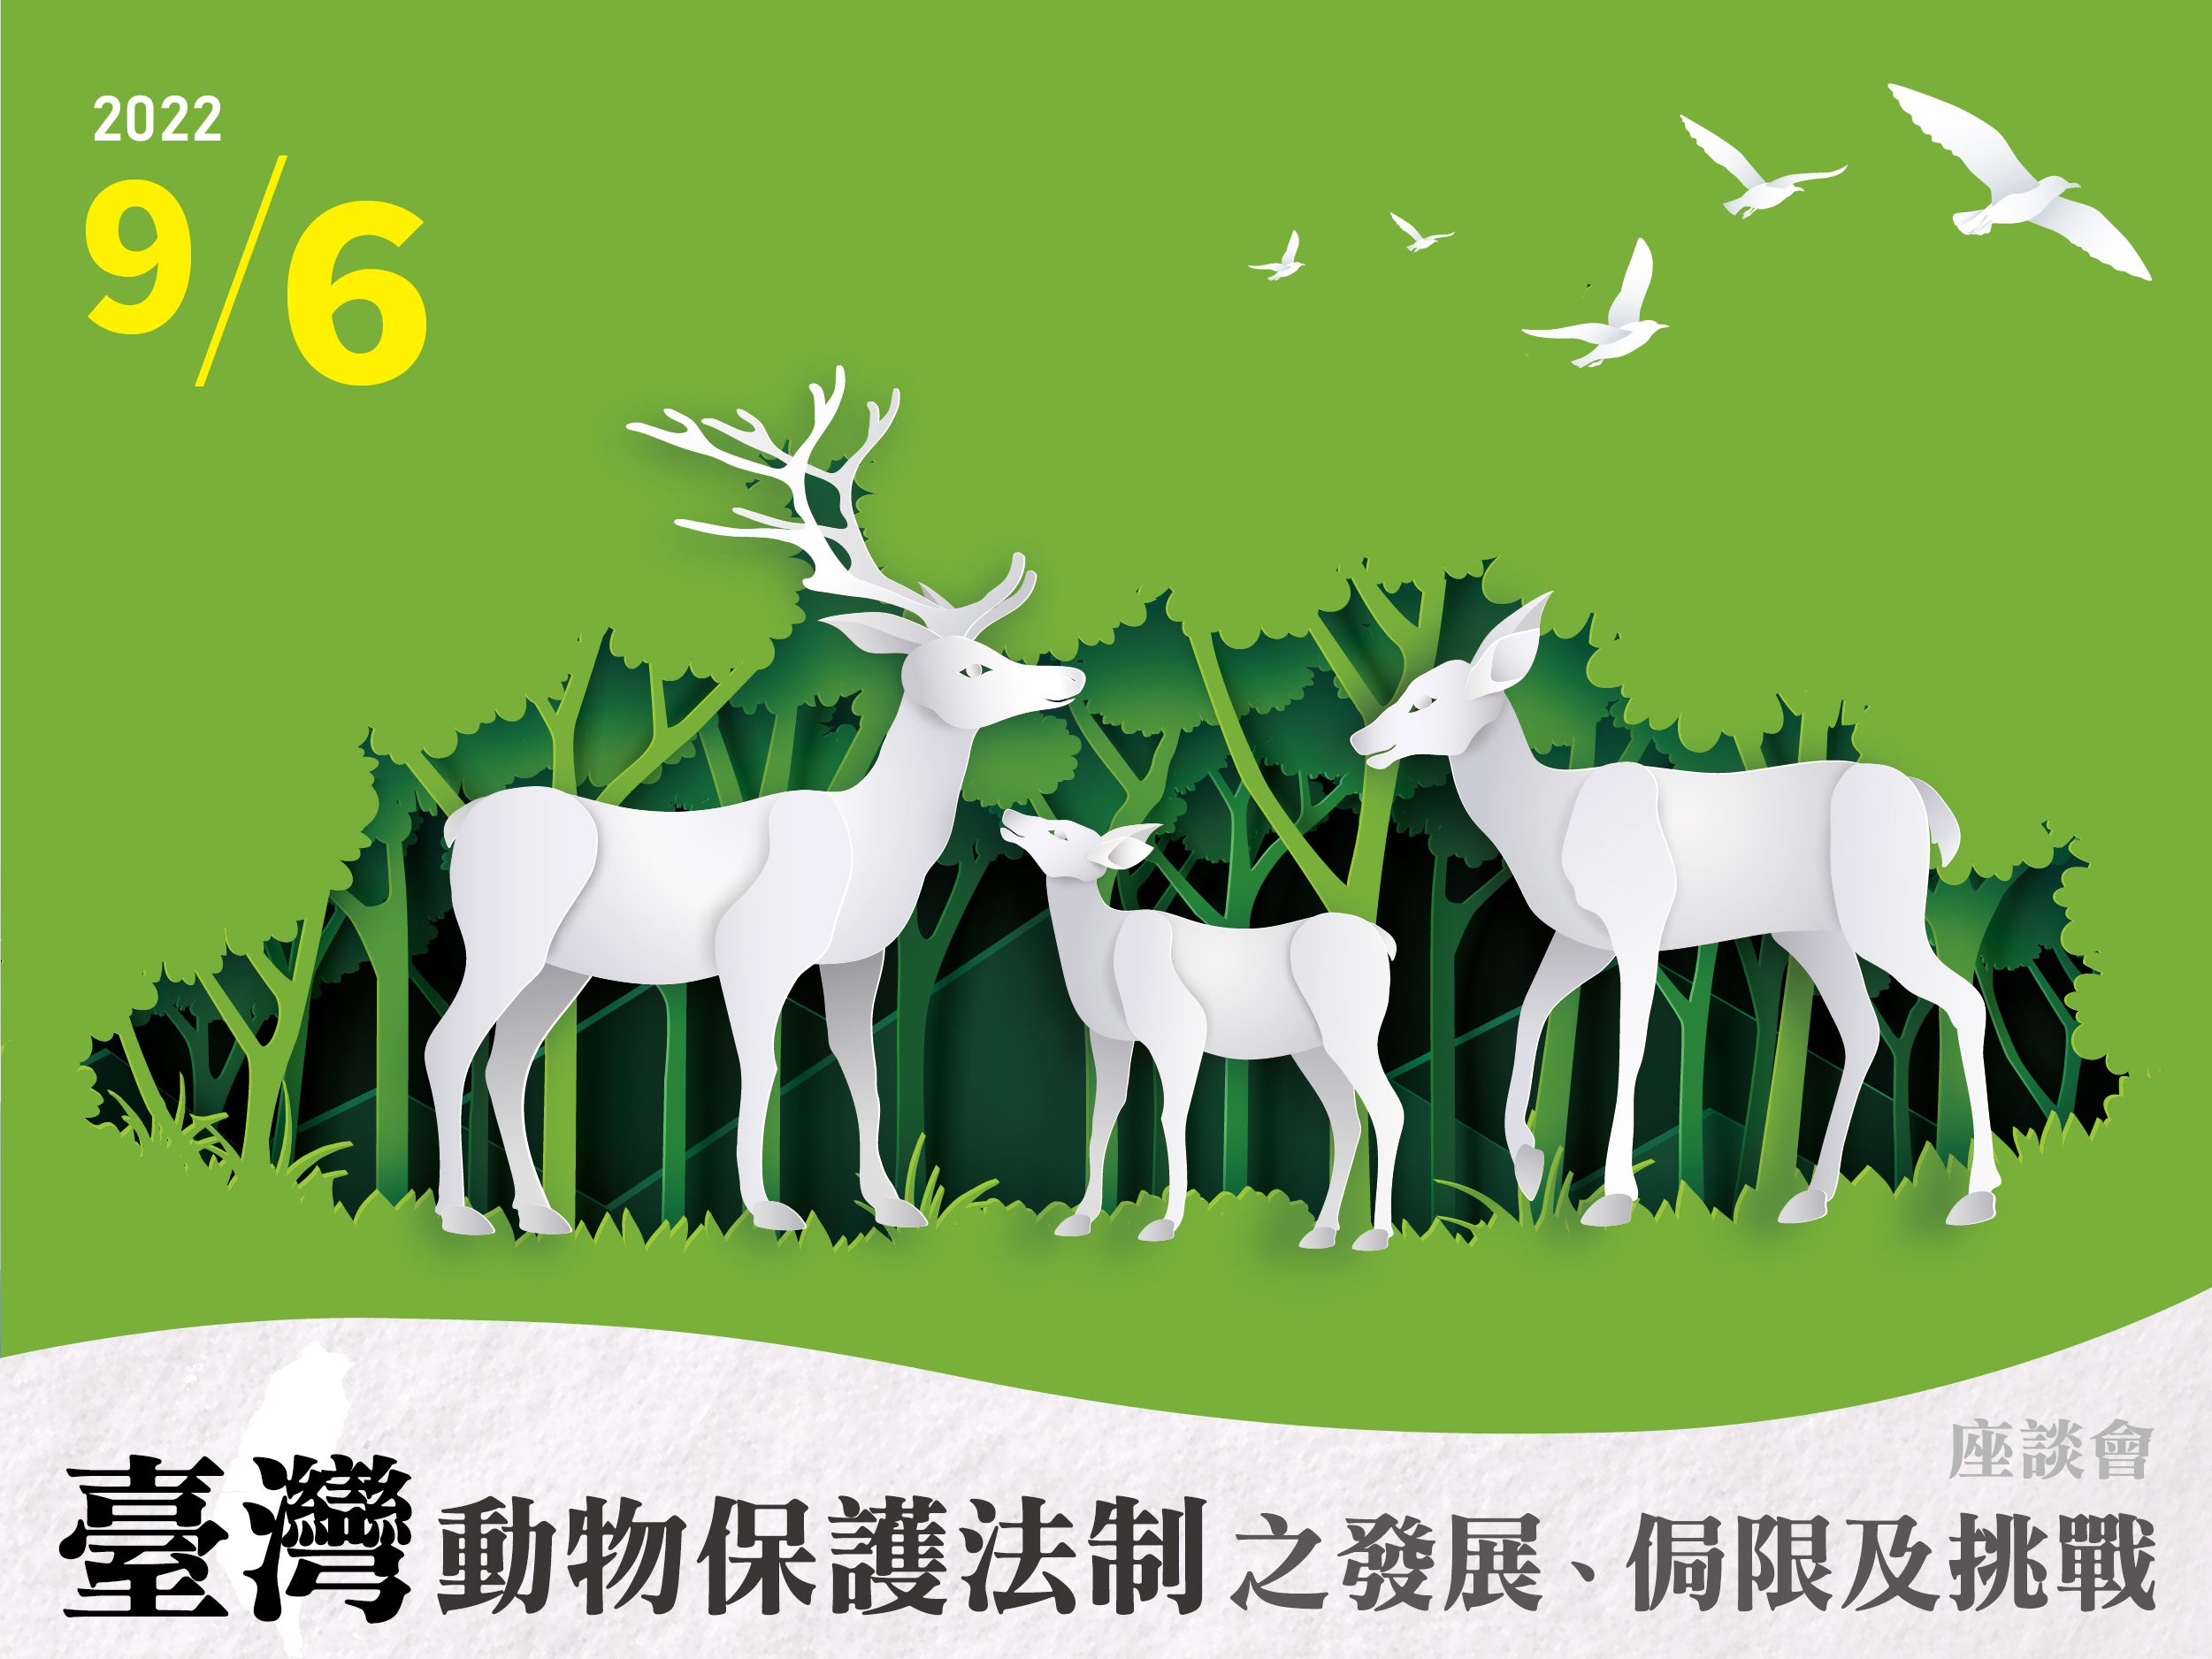 臺灣動物保護法制之發展、侷限及挑戰 座談會